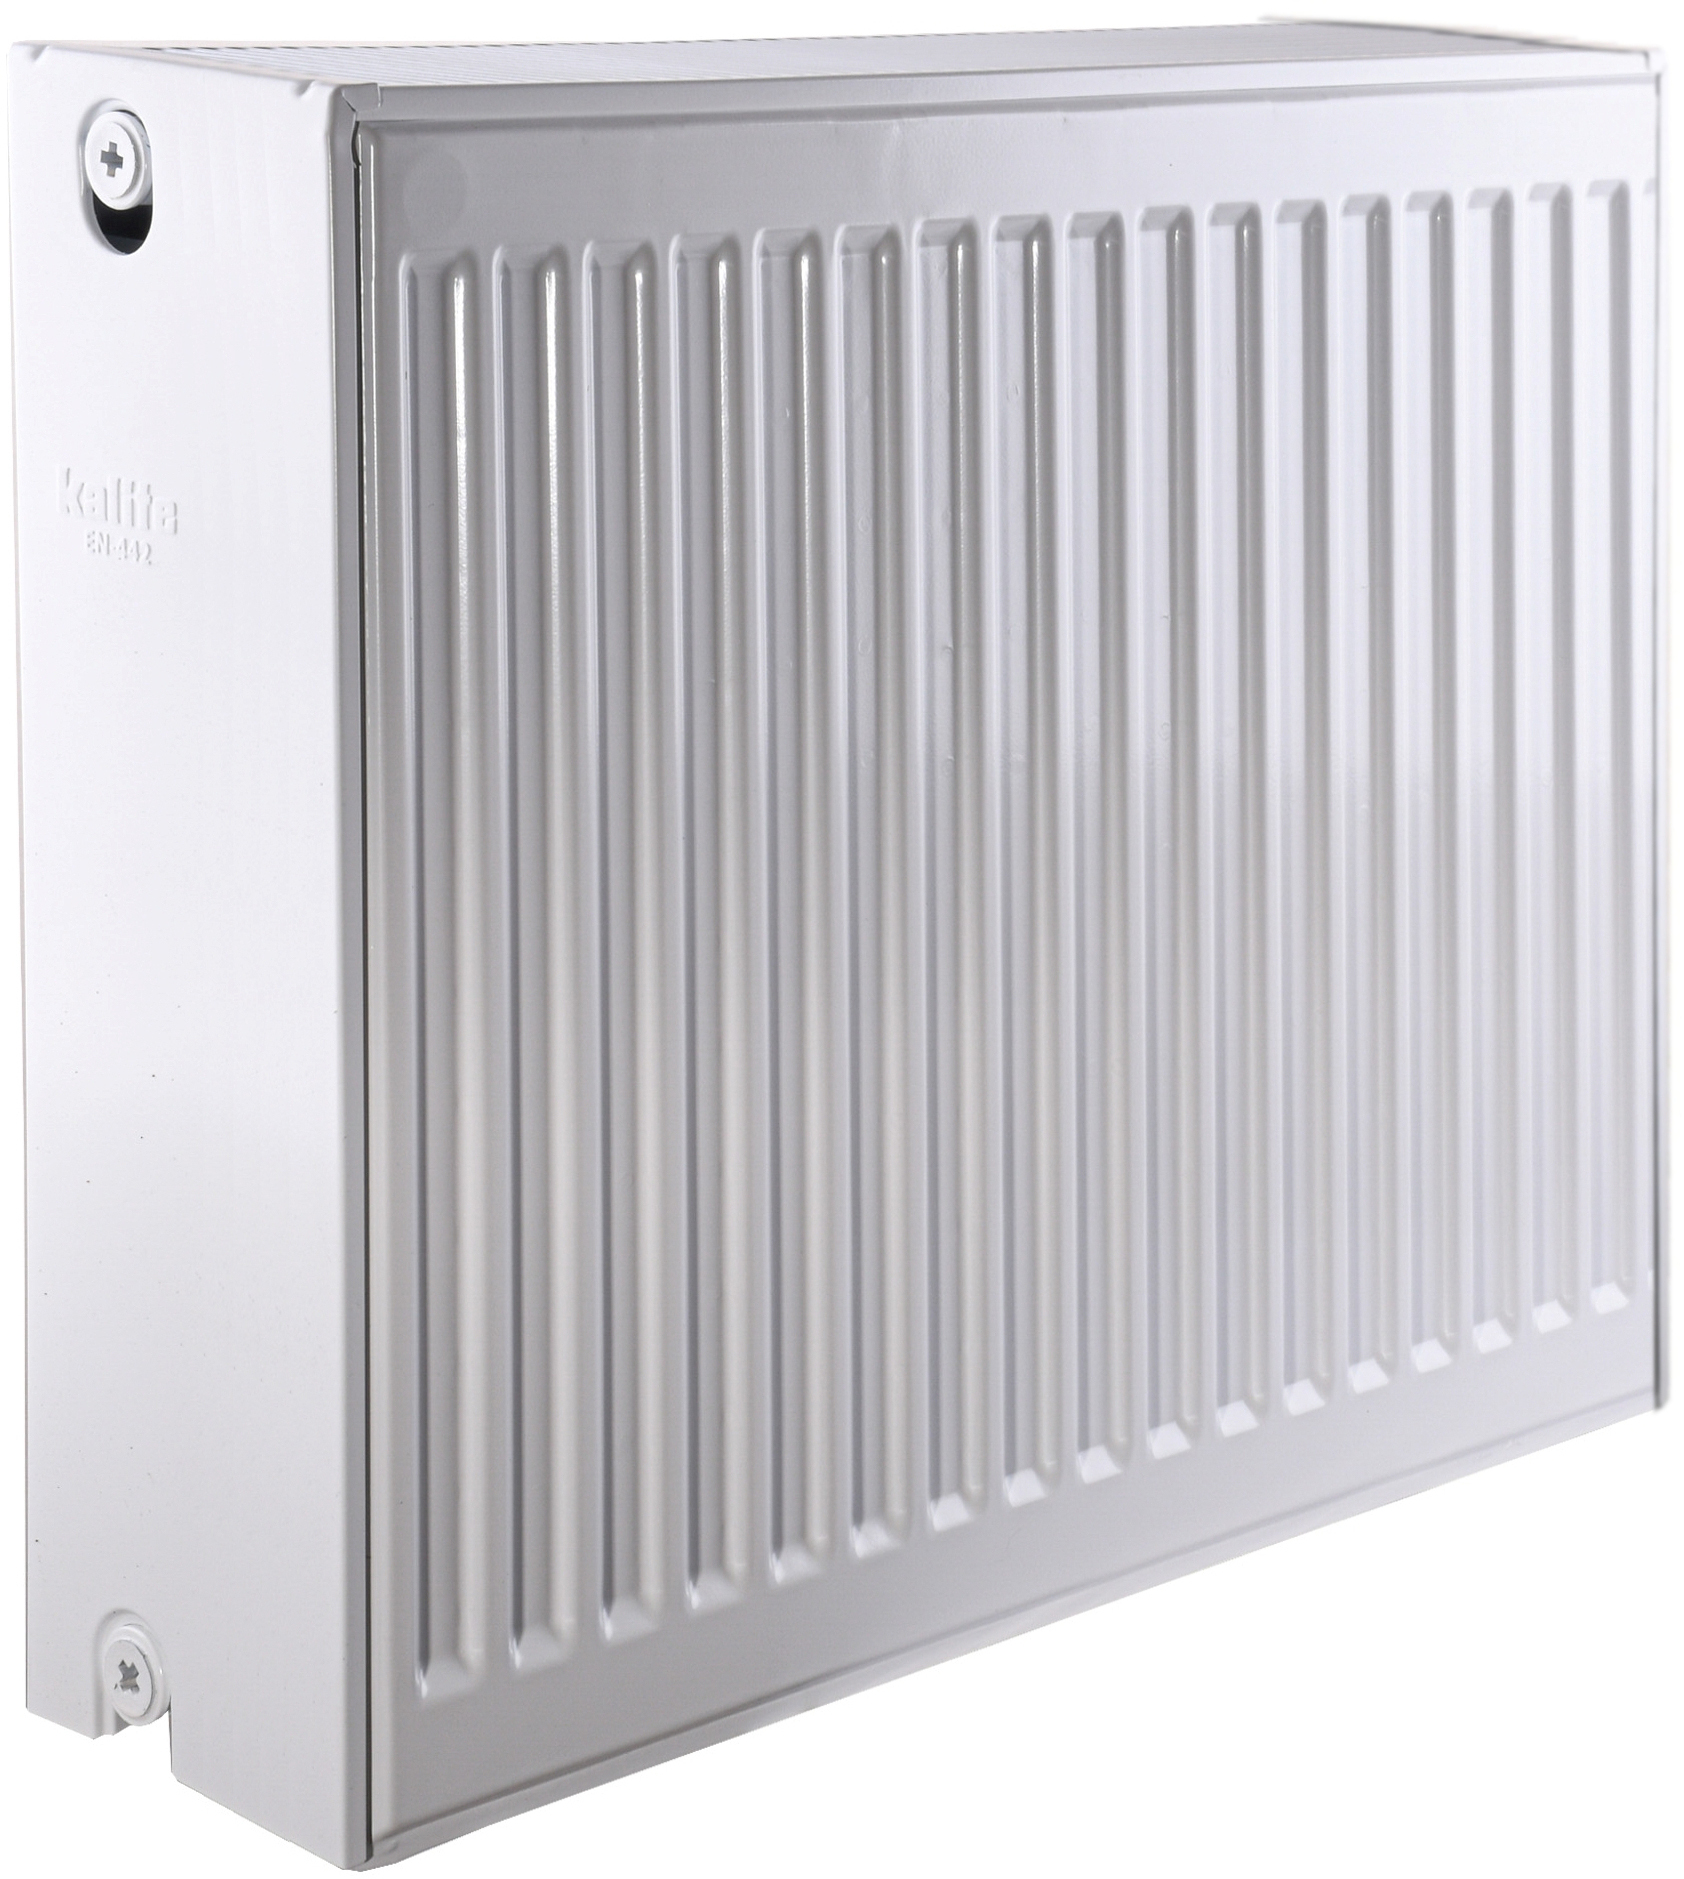 Радиатор для отопления Kalite 33 бок 500x600